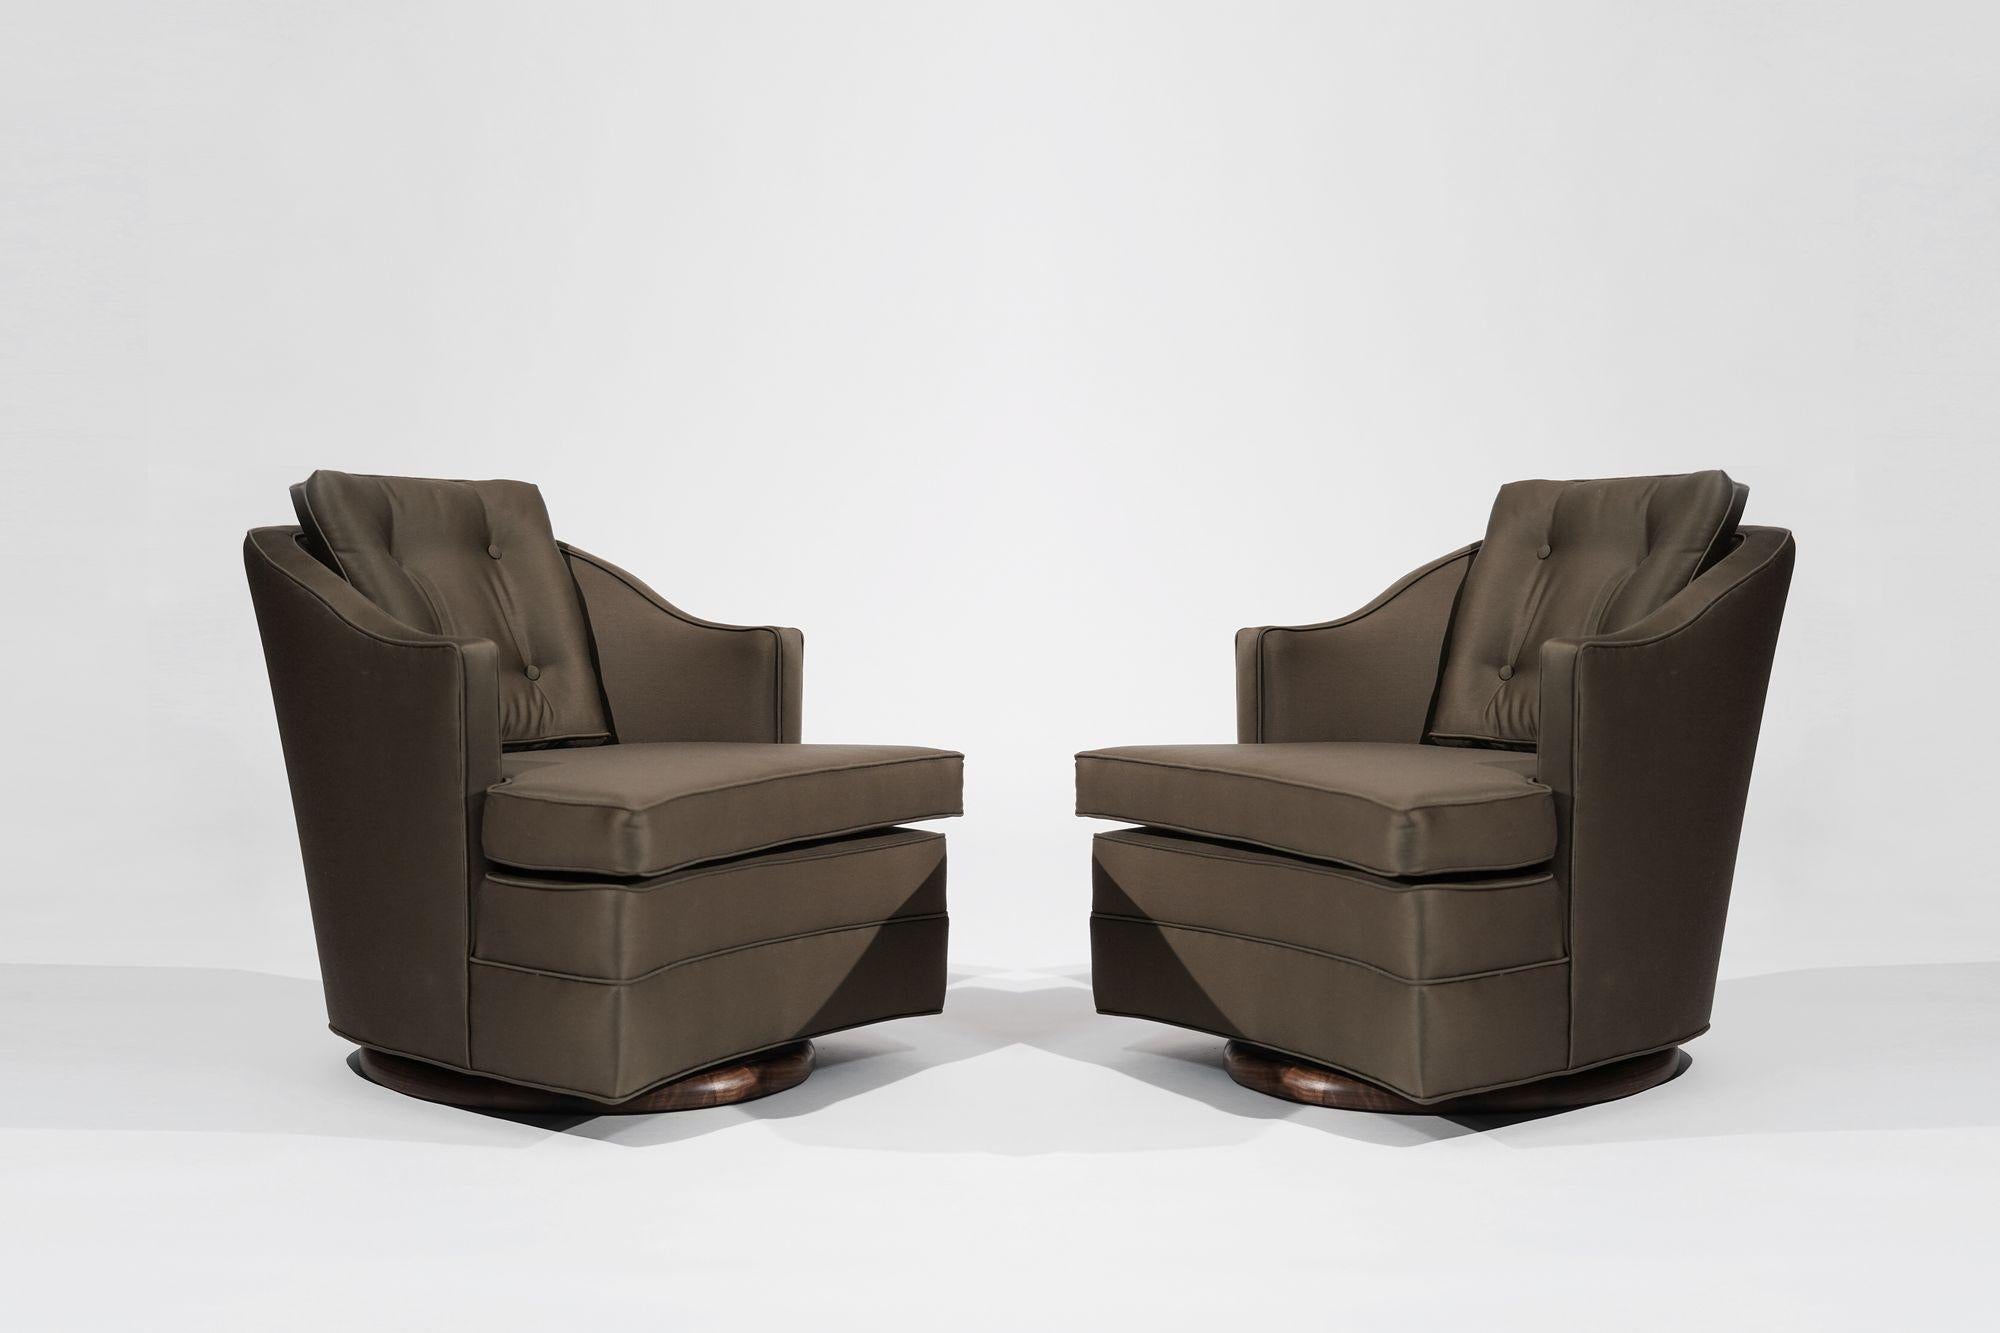 Un duo intemporel de chaises pivotantes vintage inspirées du style emblématique d'Edward Wormley pour Dunbar. Ces chaises, méticuleusement restaurées pour retrouver leur gloire d'origine, respirent l'élégance et la sophistication du milieu du